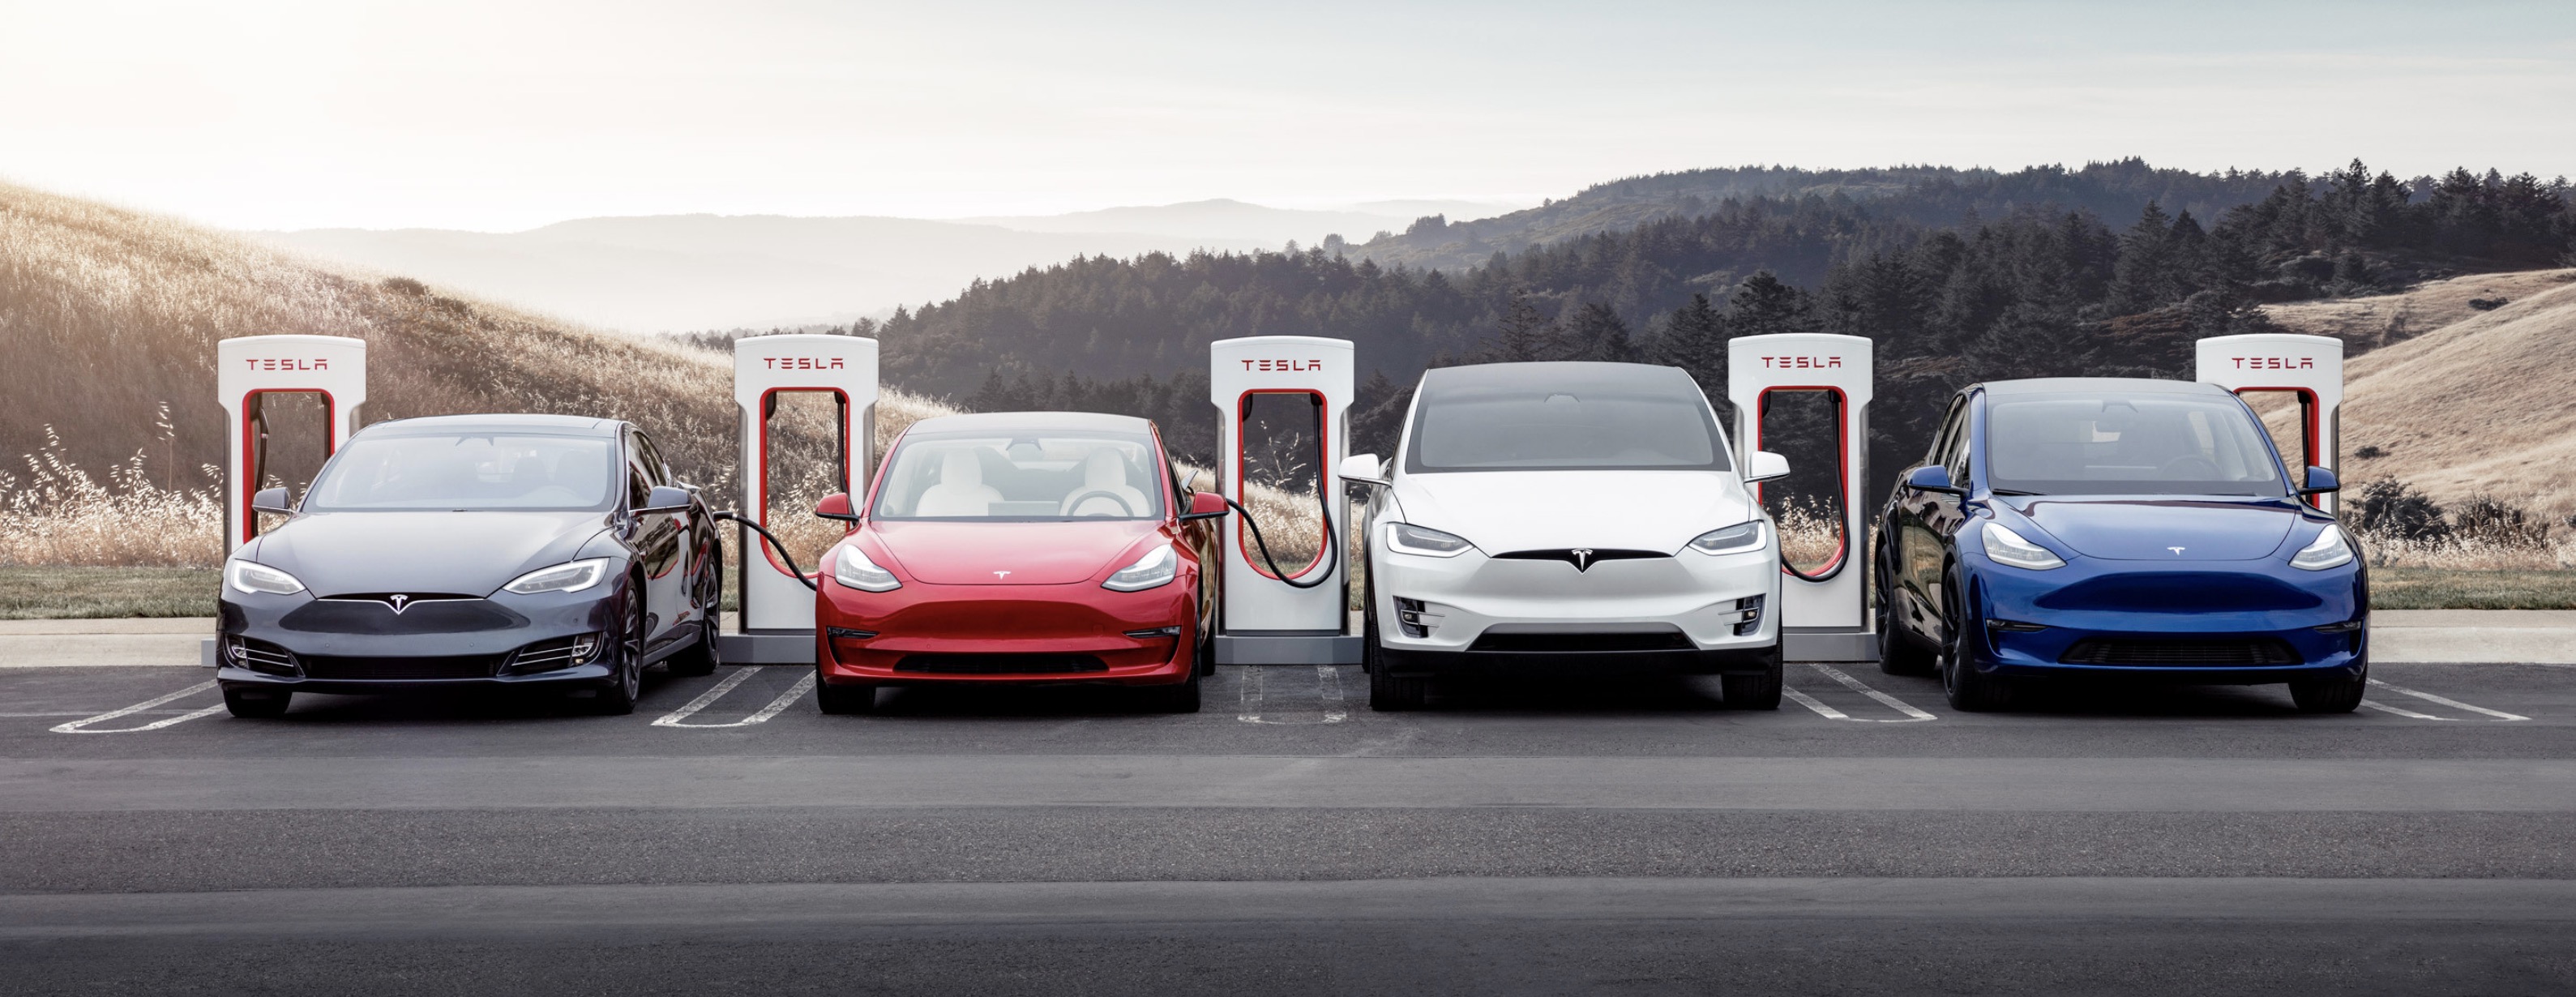 Tesla hero Supercharger charging